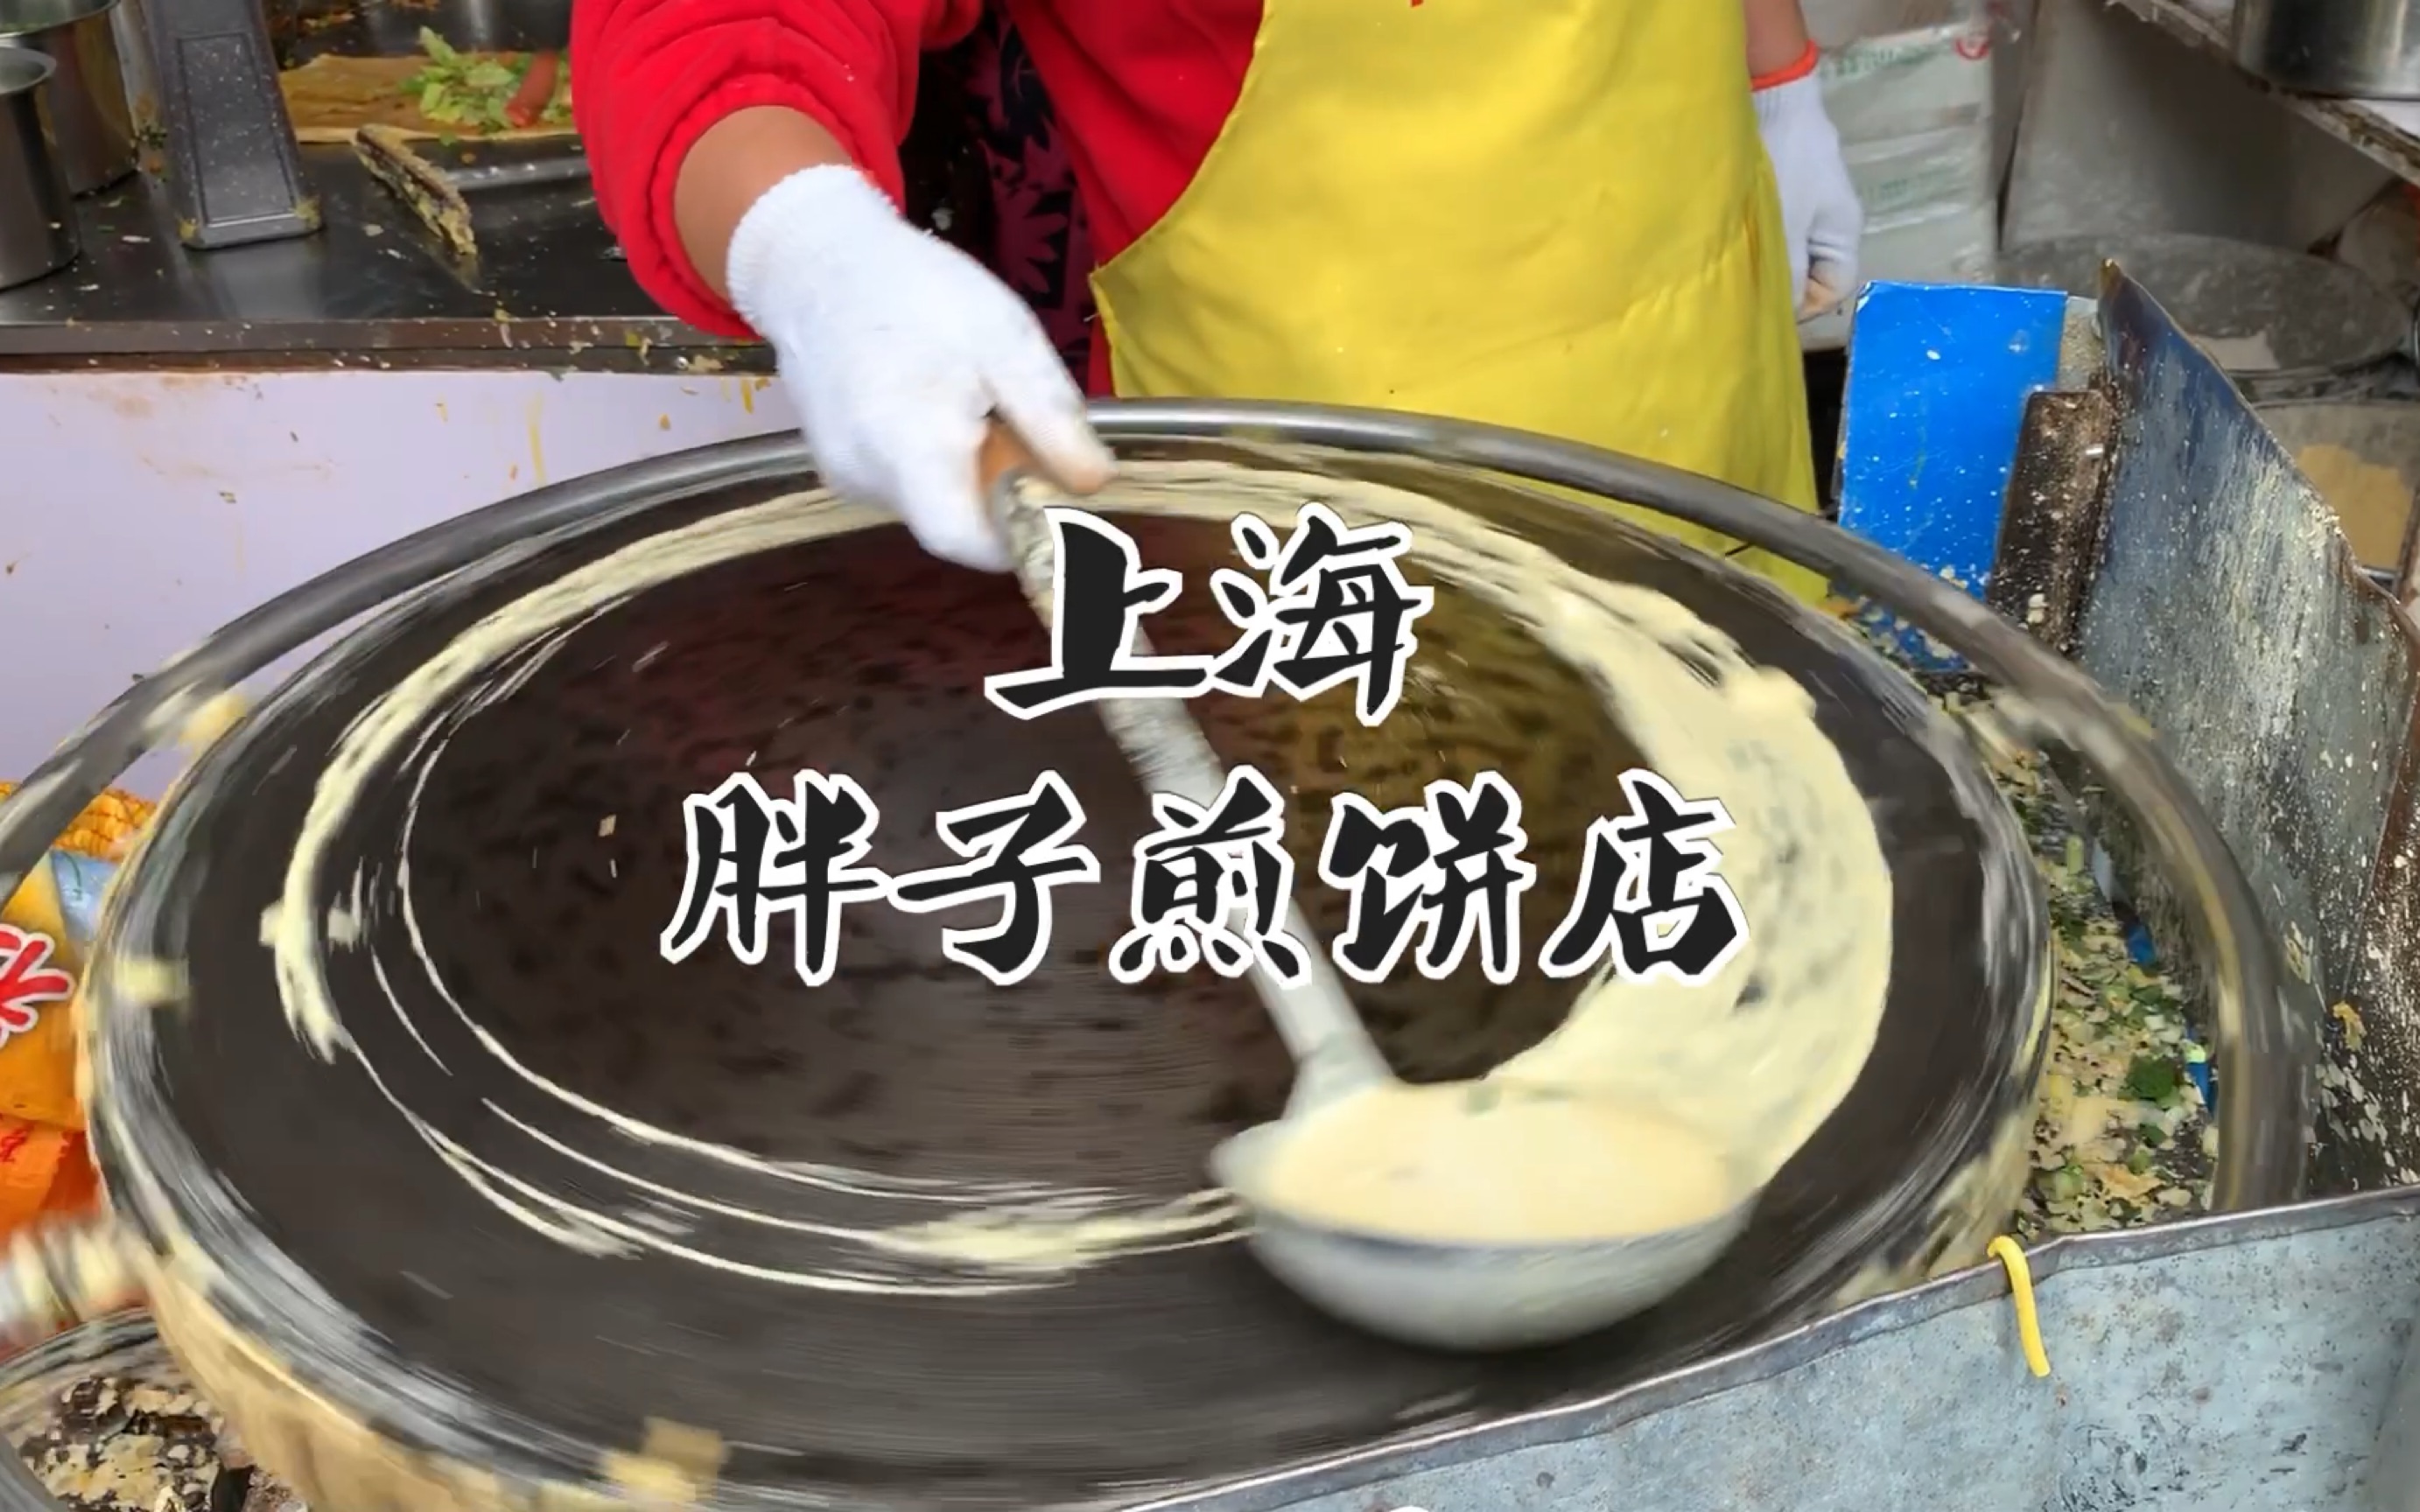 【探店分享】上海美食之网红煎饼店-|胖子煎饼|制作过程|煎饼果子